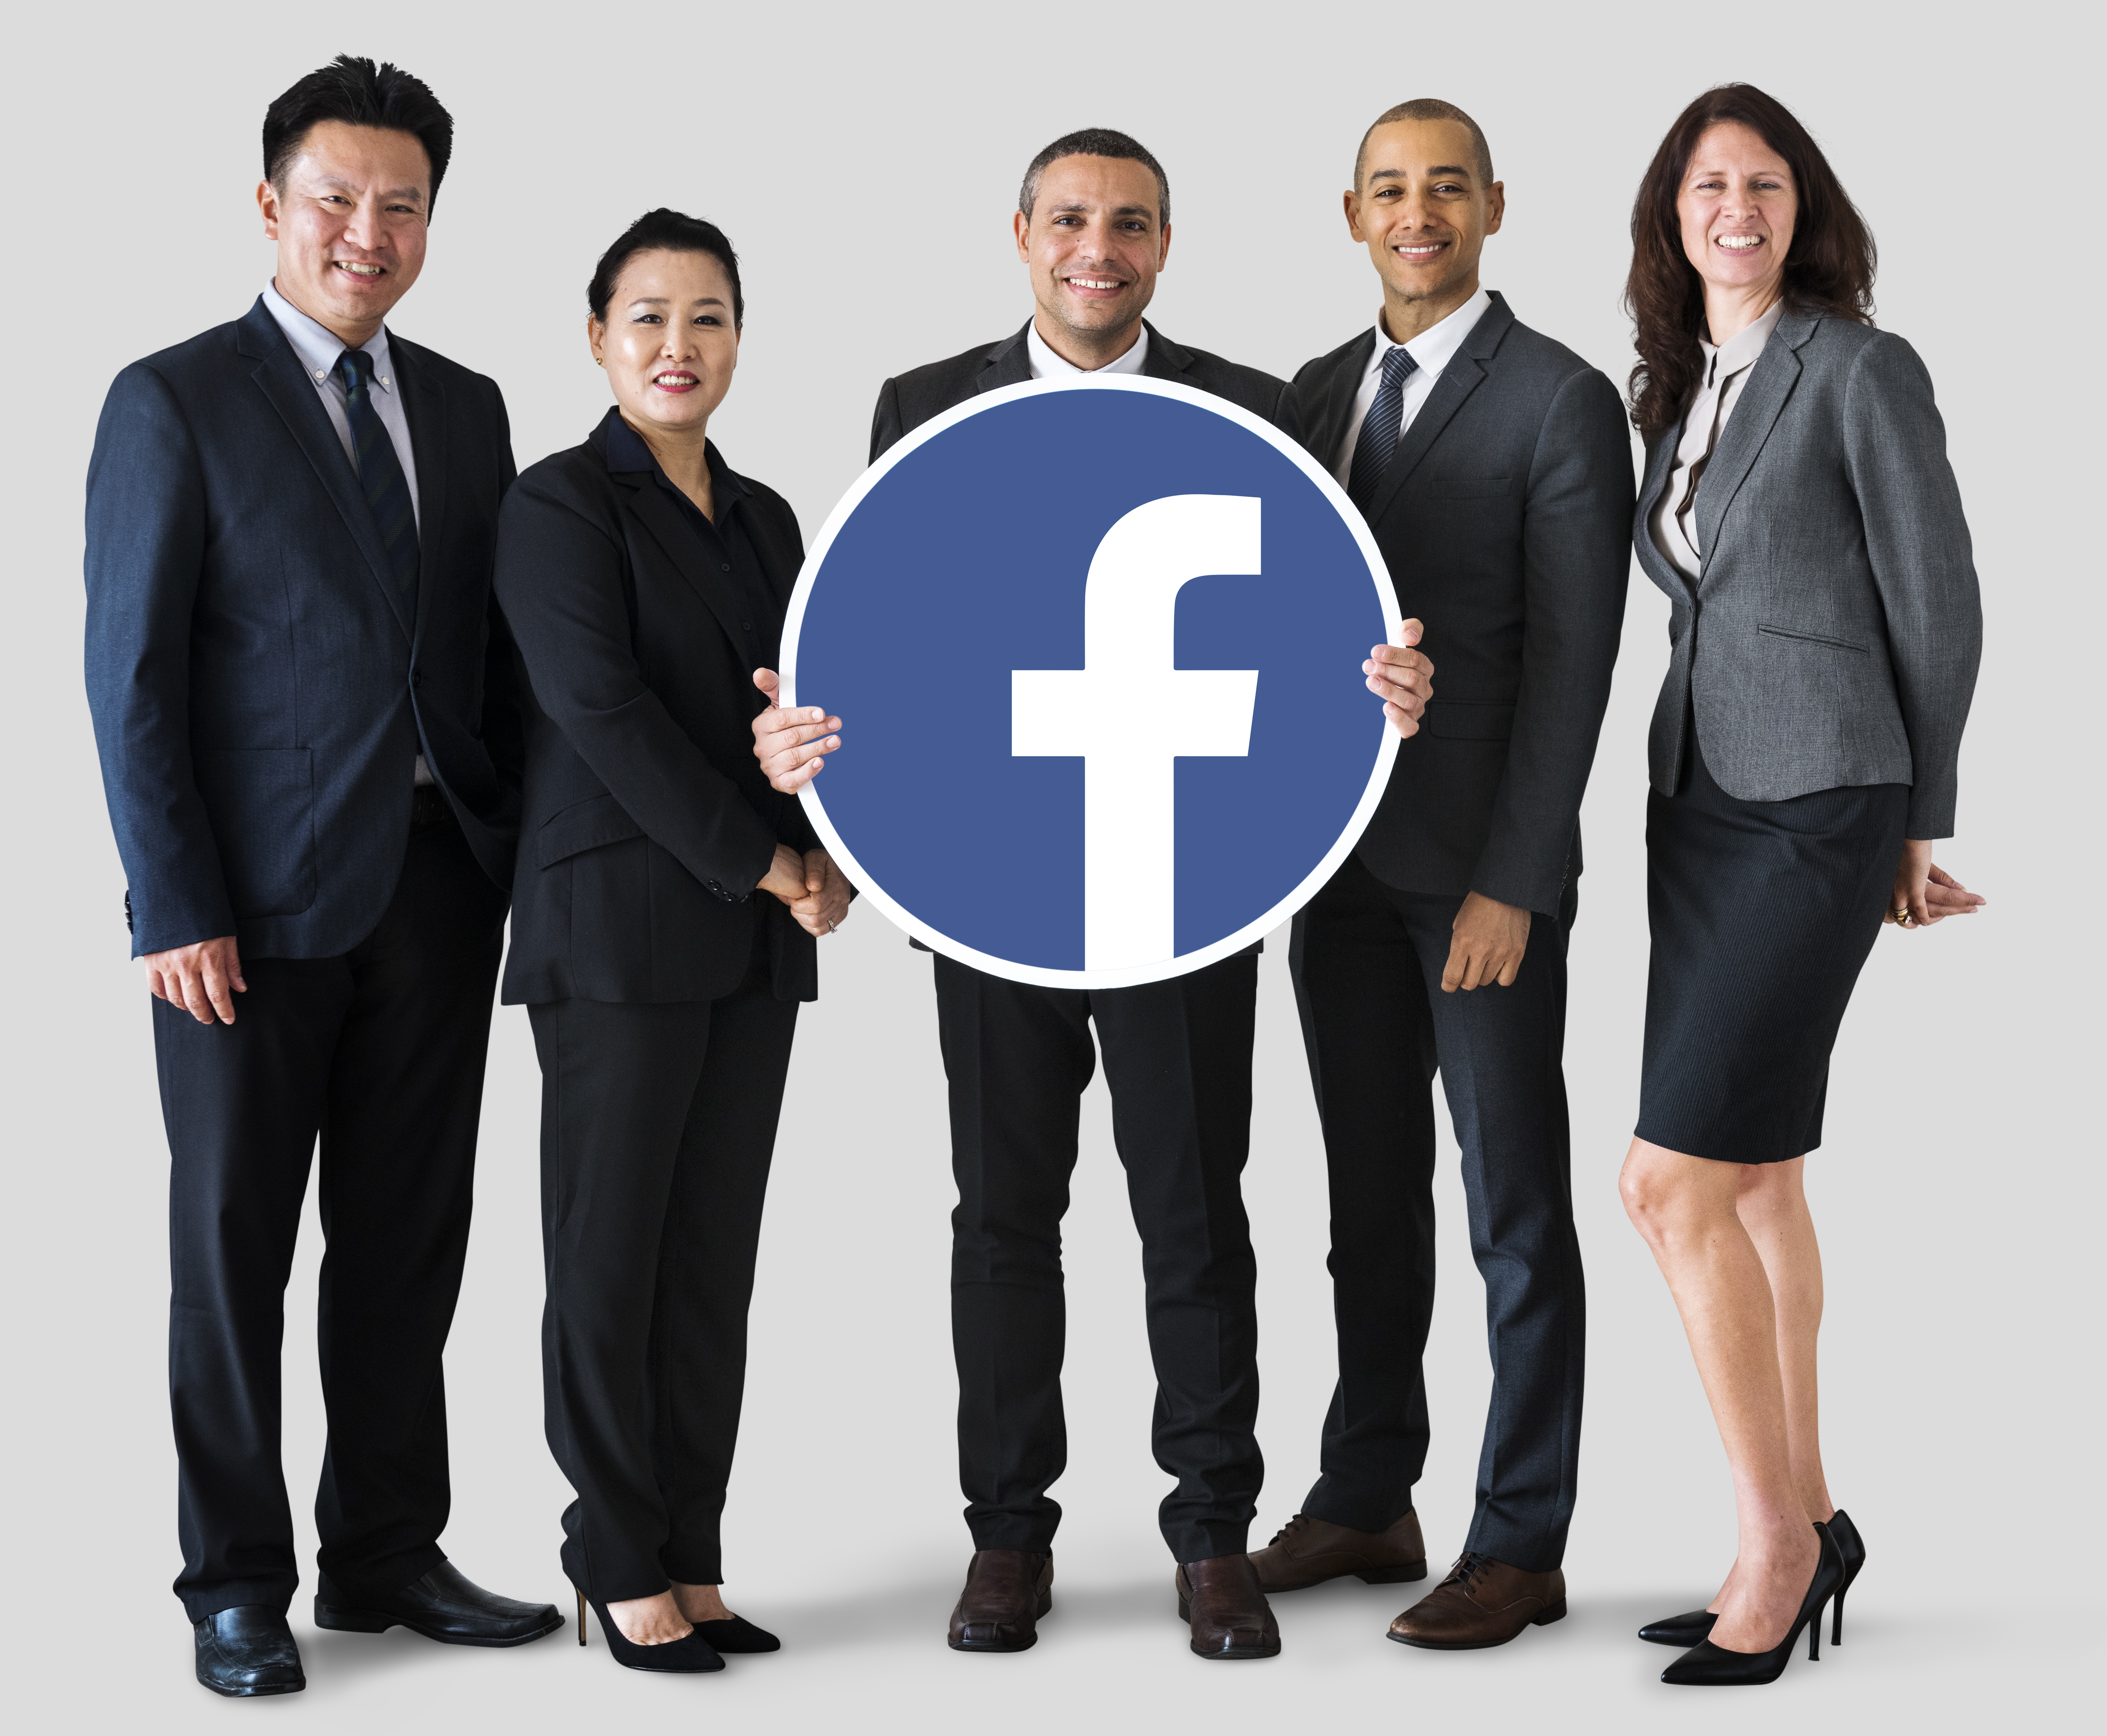 Great result. Новые люди фото логотипа. Доступный бизнес фото лого. Facebook Business. Hujjat foto logo.